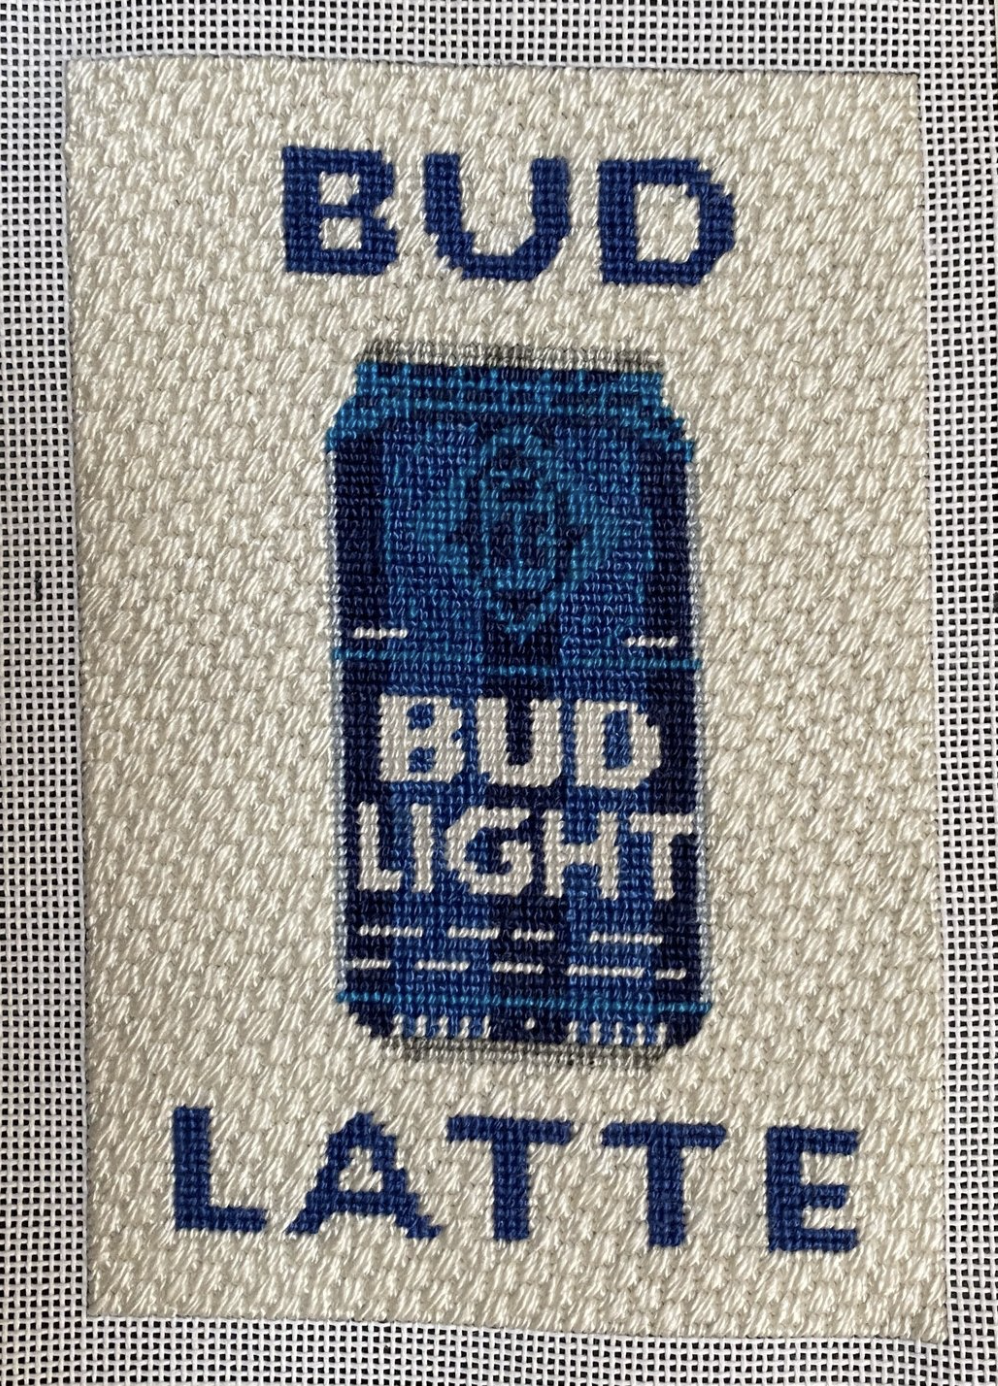 Bud Latte Beer